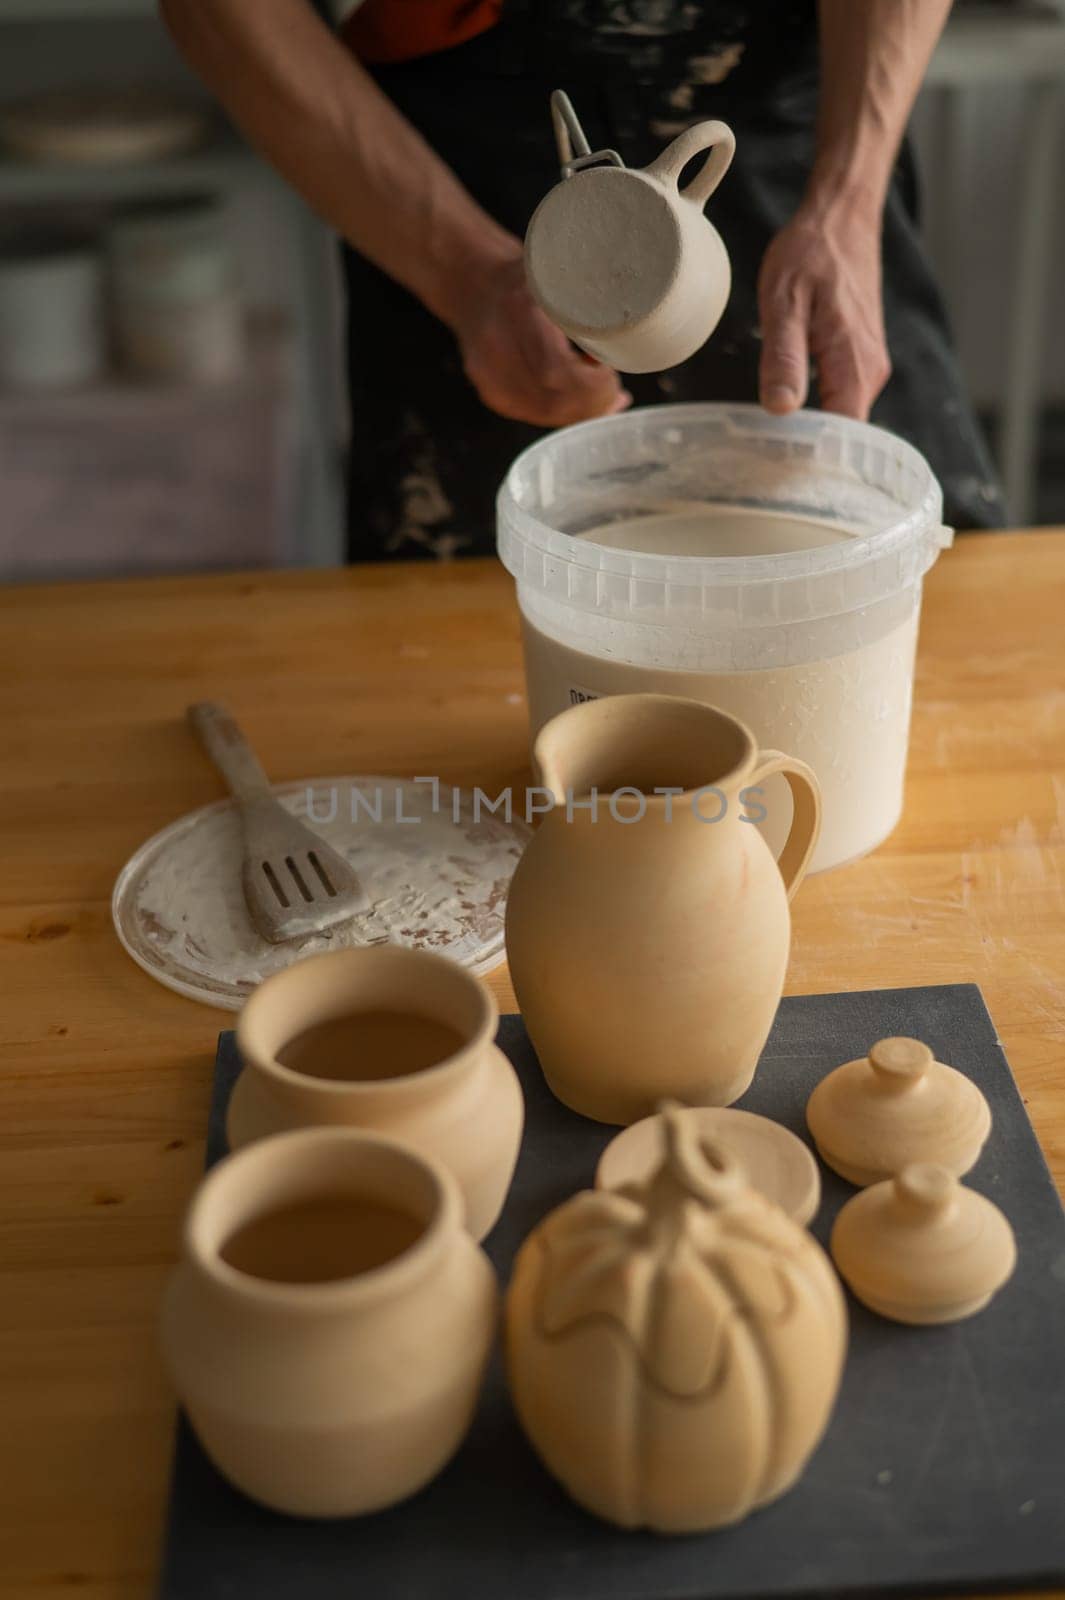 Close-up of a potter's hands glazing a ceramic mug. Vertical photo